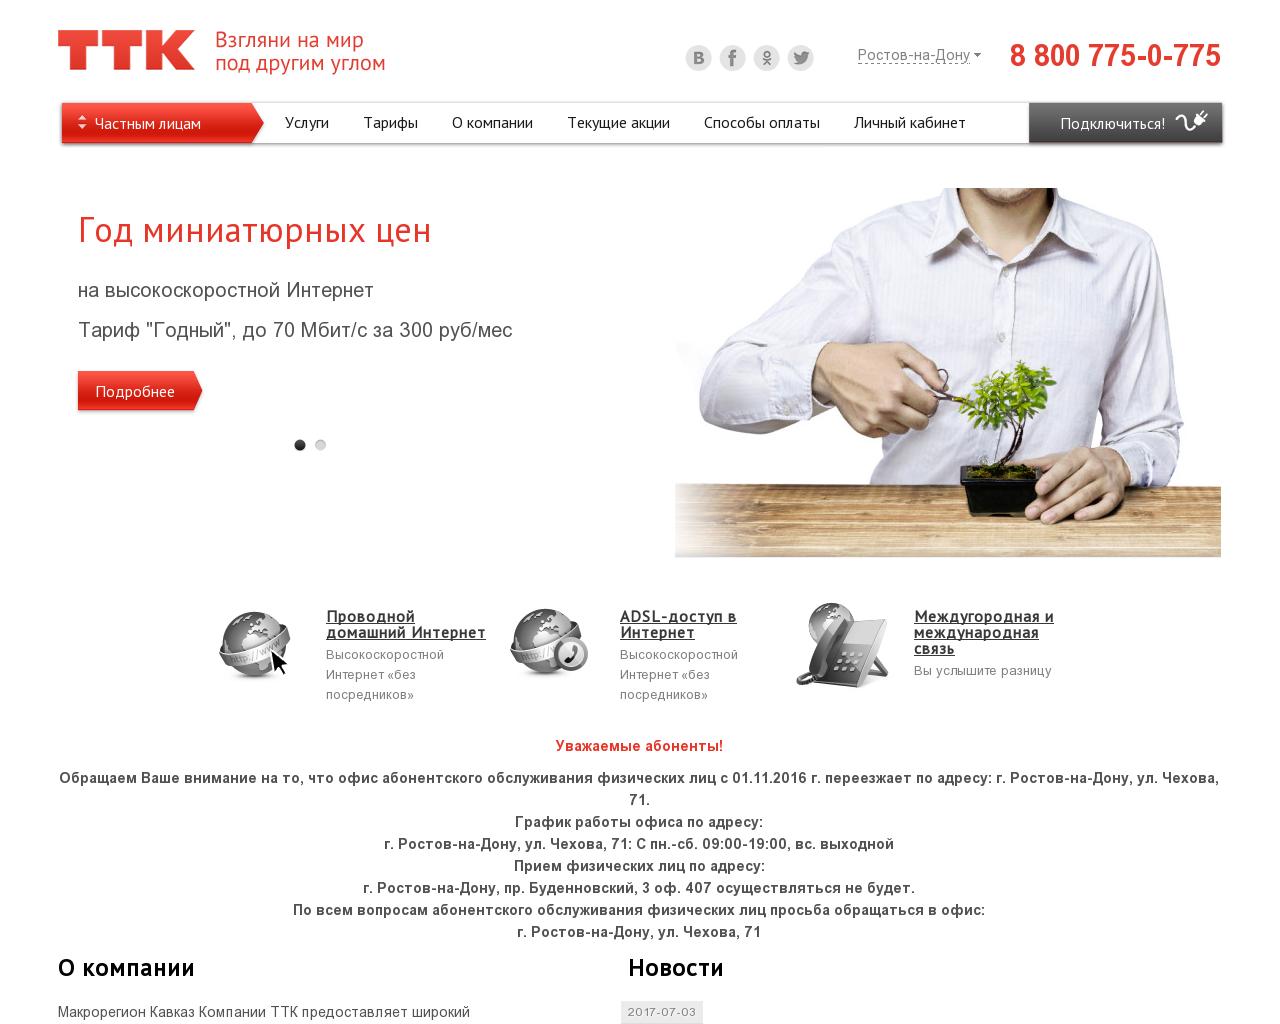 Изображение сайта kttk.ru в разрешении 1280x1024